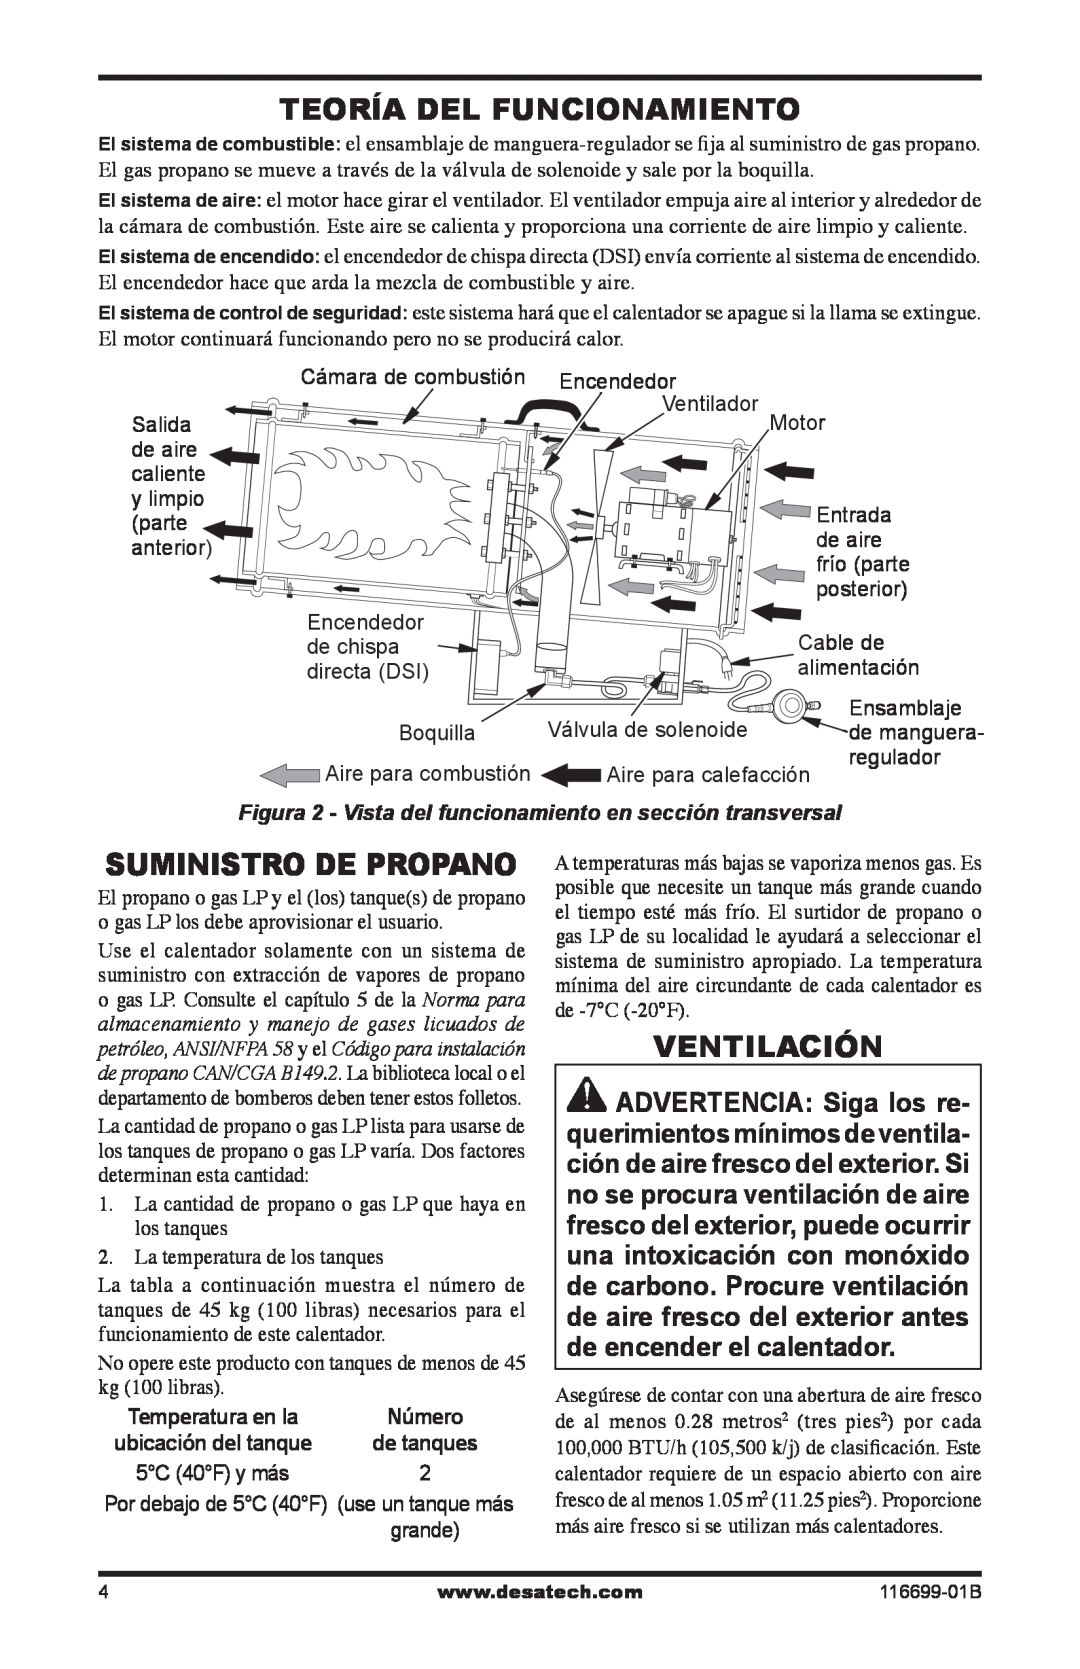 Desa SBLP375AT, 375-F owner manual Teoría Del Funcionamiento, Ventilación, Suministro De Propano 